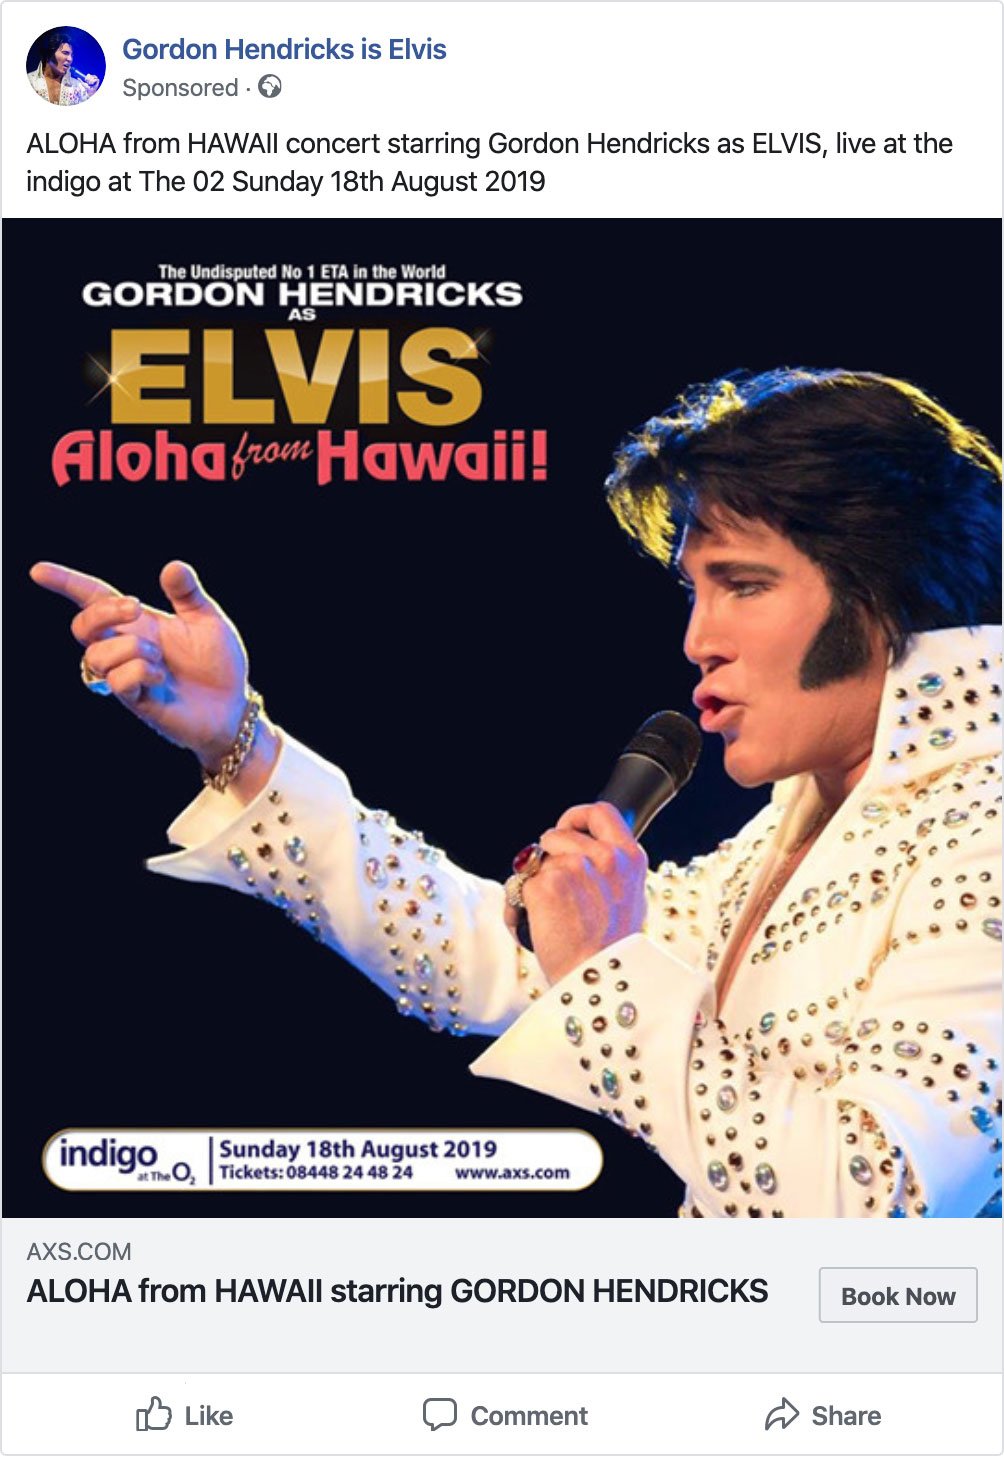 Aloha from Hawaii Gordon Hendricks as Elvis